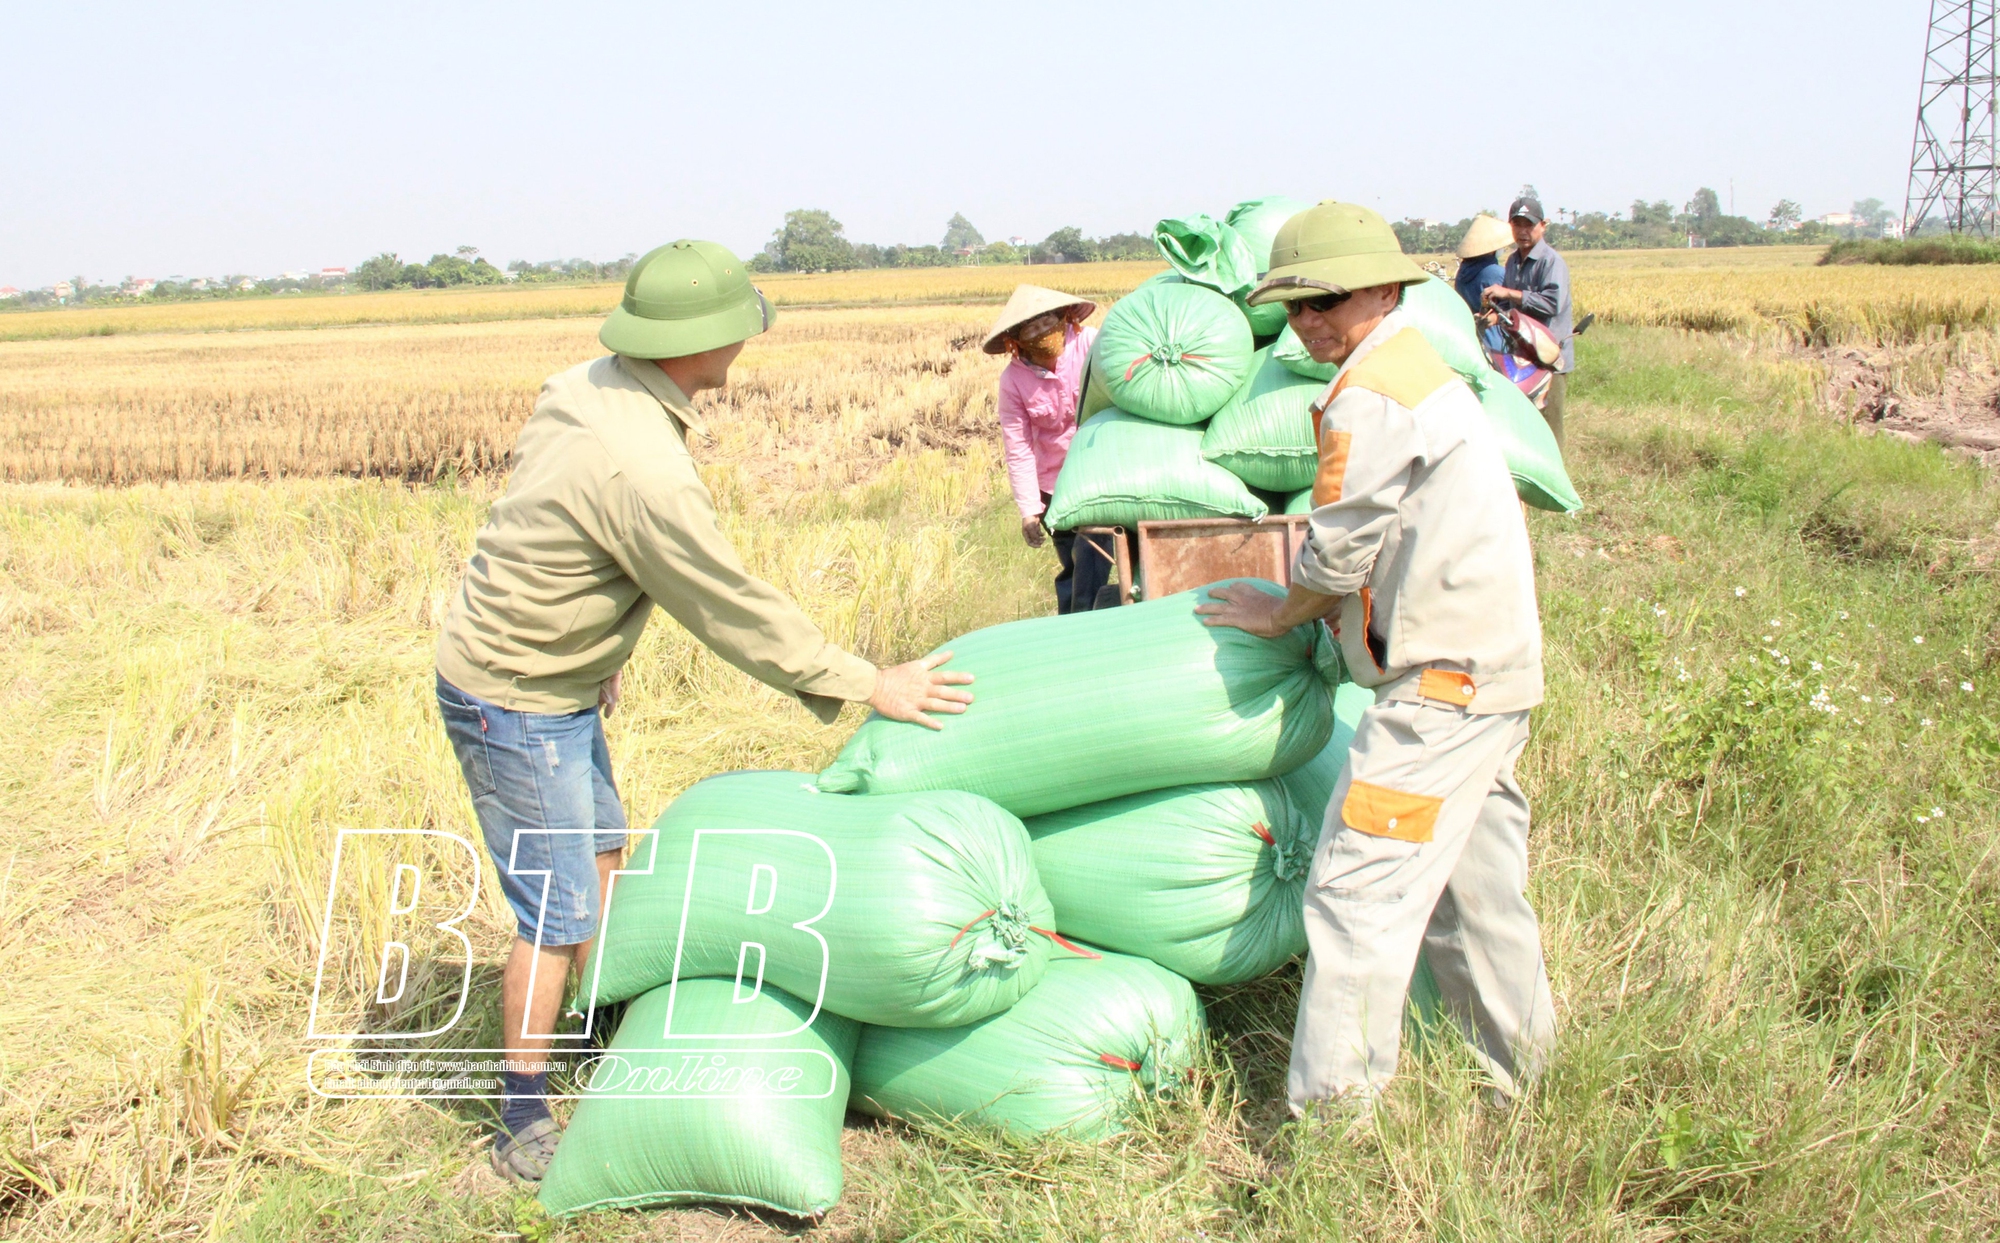 Ở một huyện của tỉnh Thái Bình có 400 hộ cấy từ 2 mẫu lúa, hộ nhiều lên đến 50 mẫu - Ảnh 1.